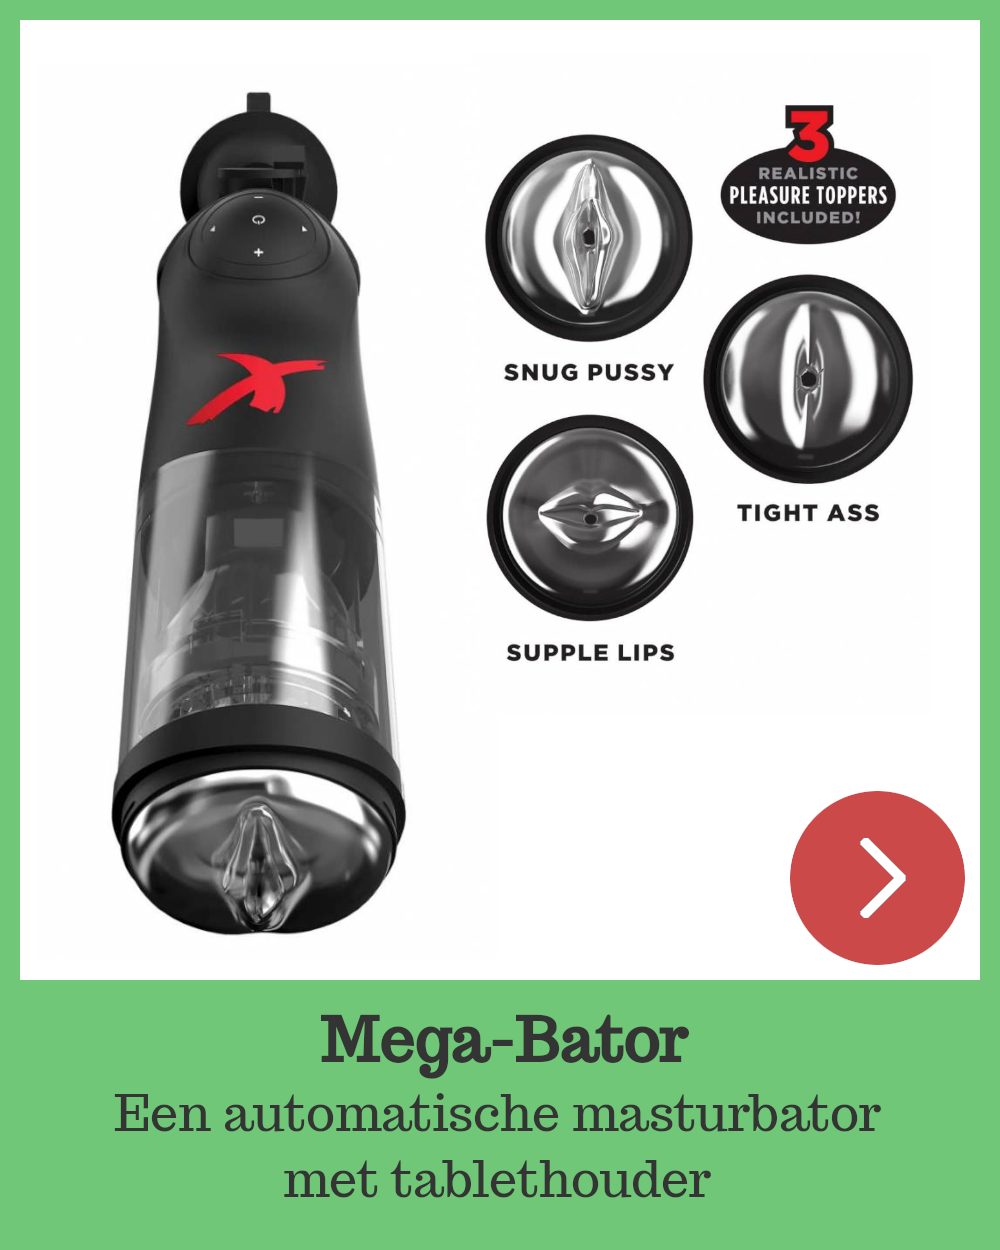 Mega-Bator, automatische masturbator met drie openingen en een tablethouder